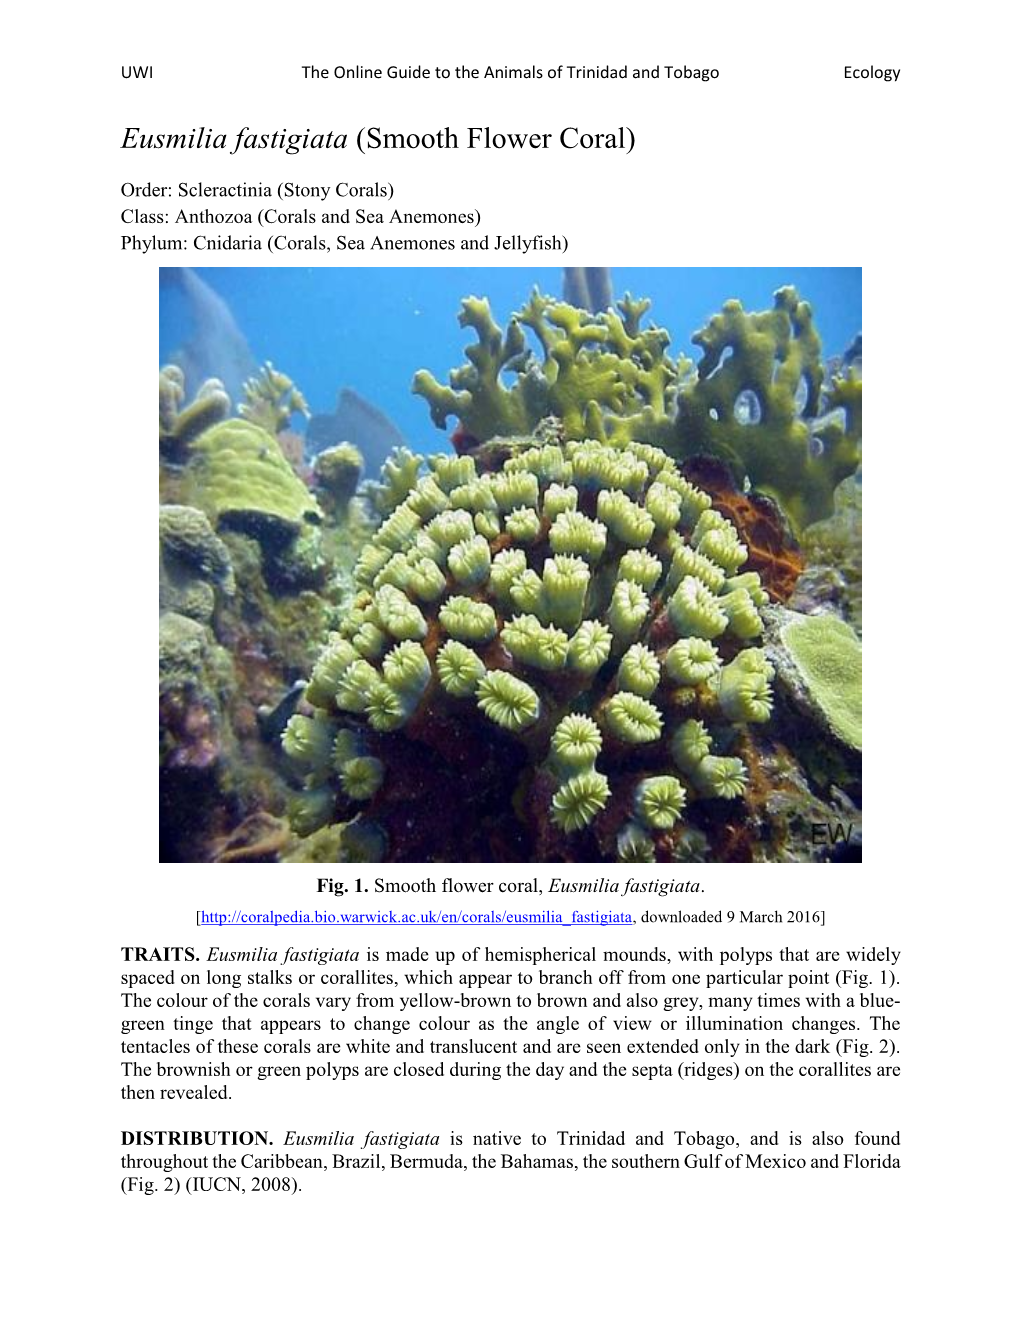 Eusmilia Fastigiata (Smooth Flower Coral)